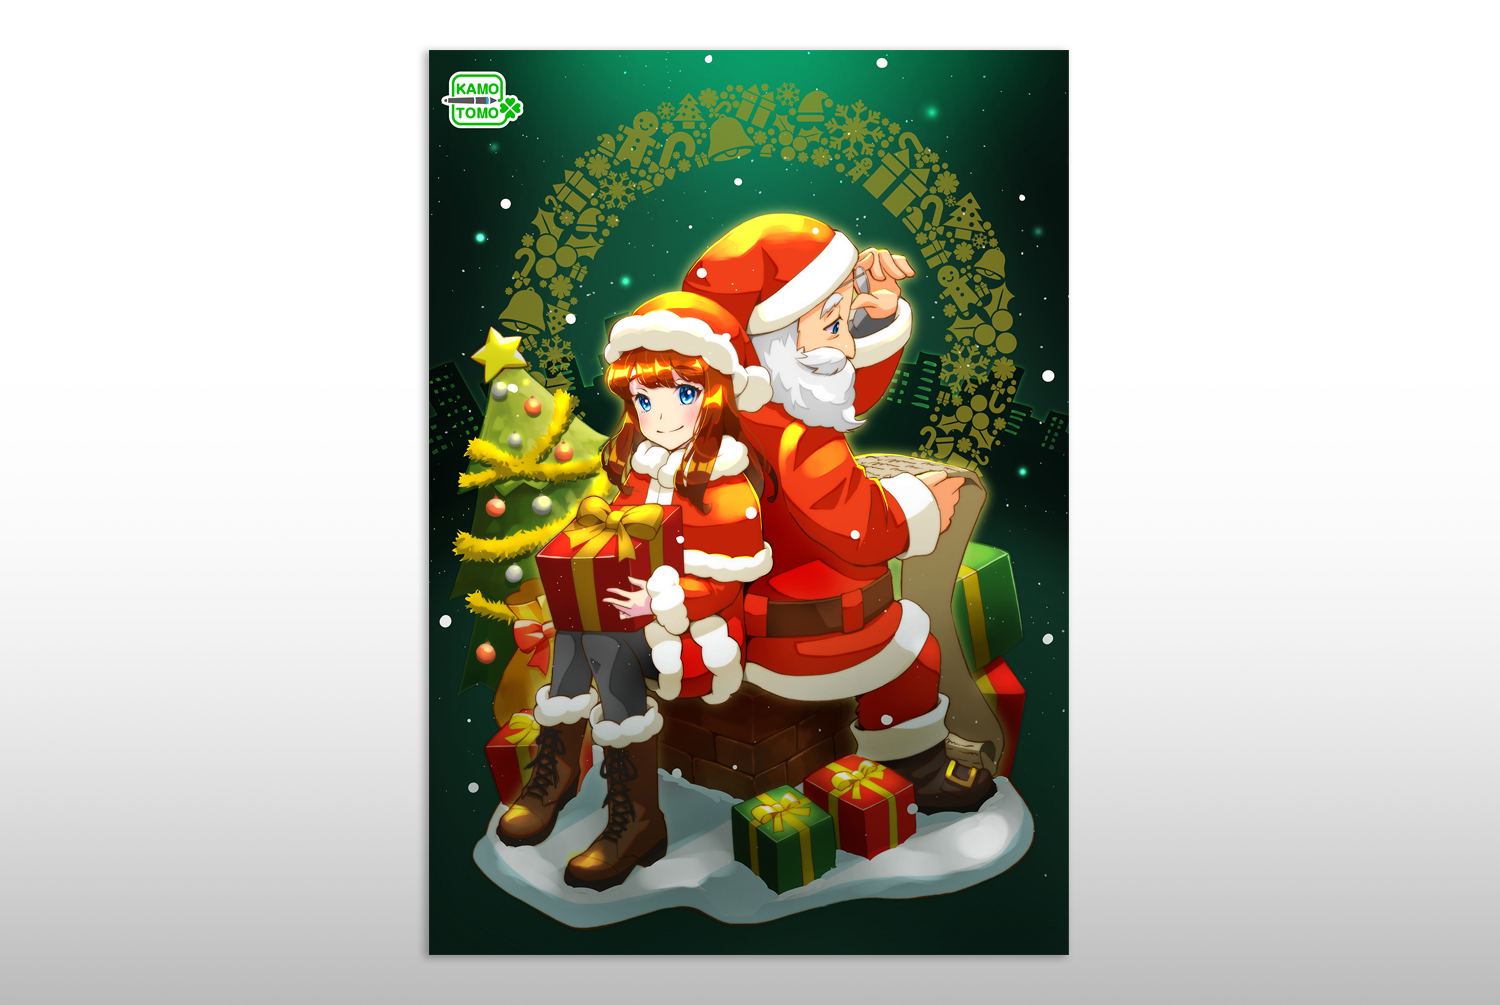 モックアップ制作 クリスマスキャンペーン用ポスター かもともイラストレーション